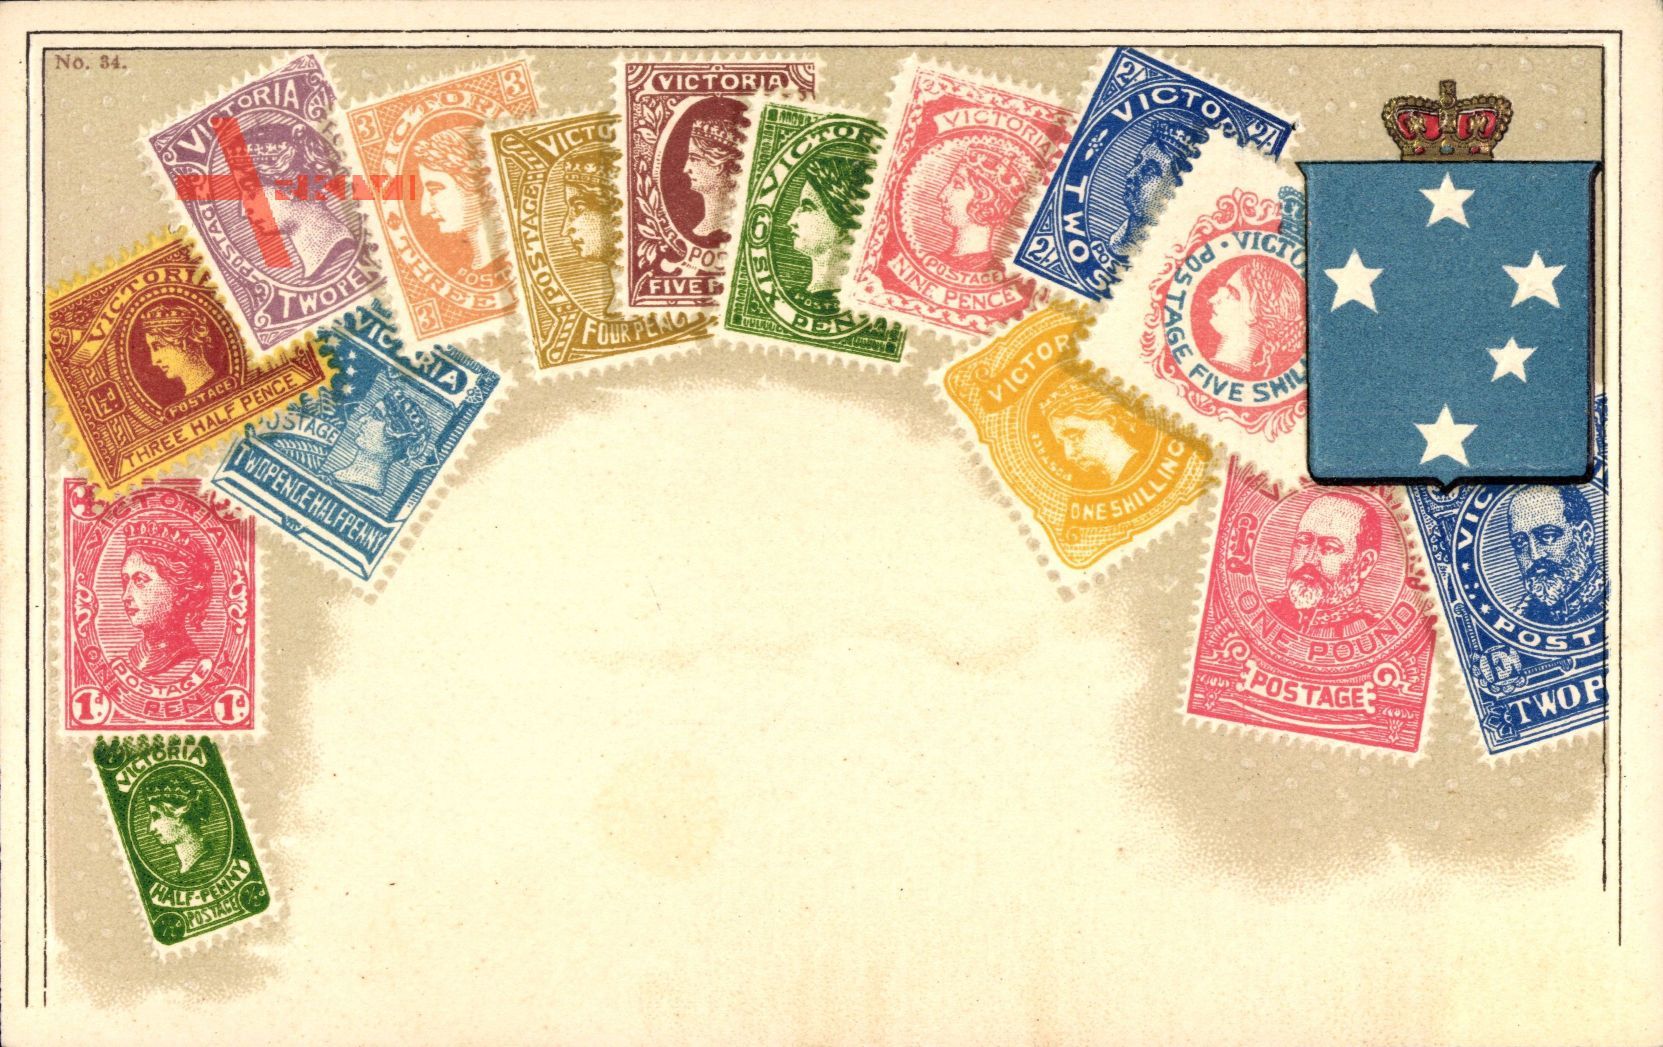 Briefmarken Neuseeland, New Zealand, Pence, Pound